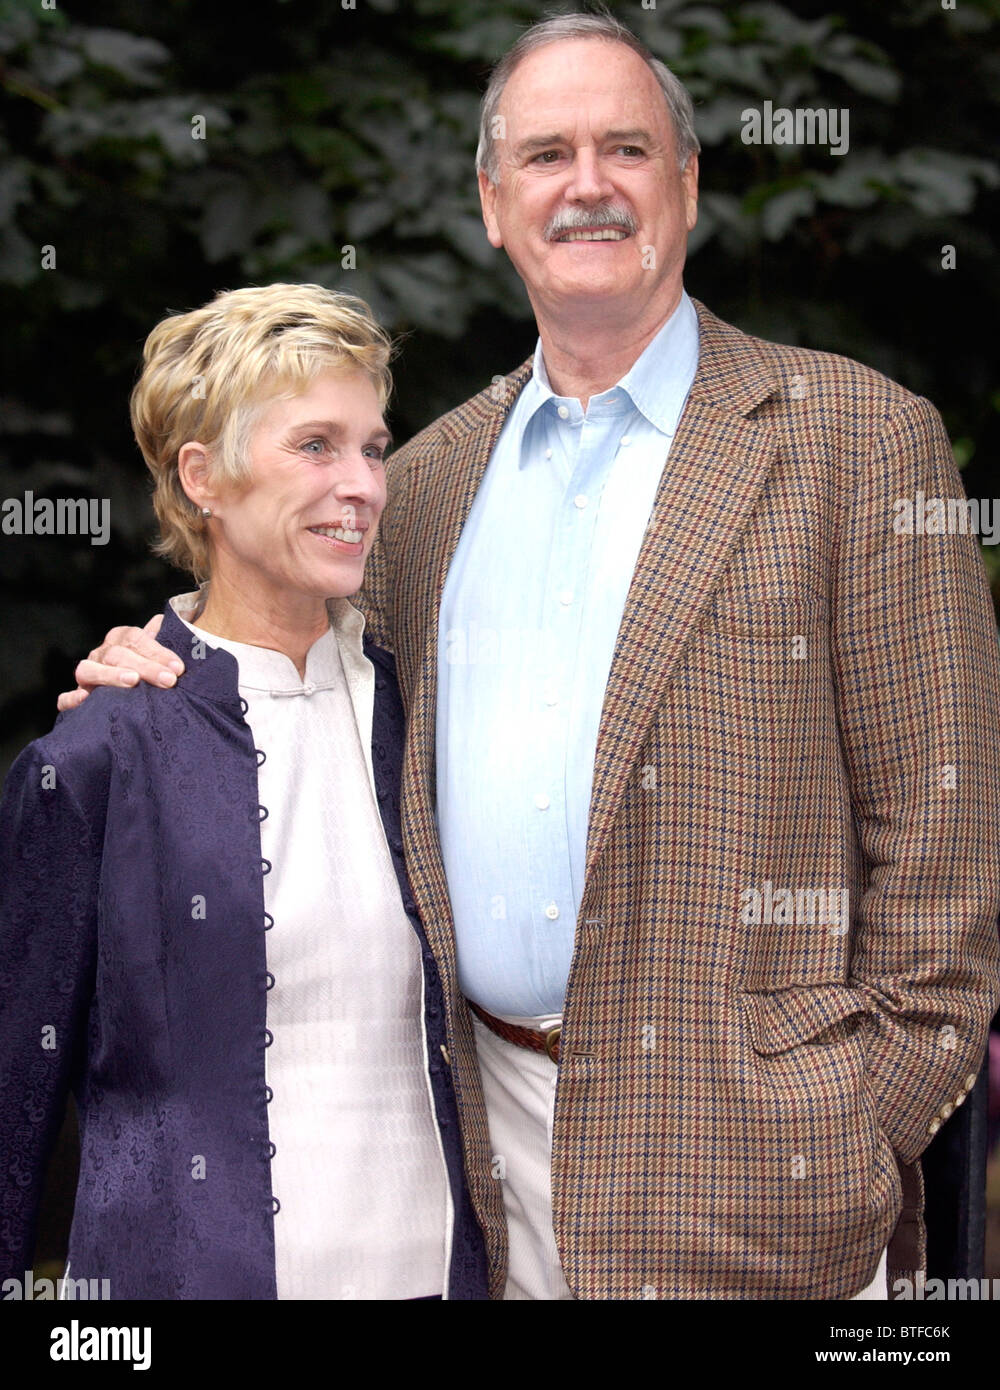 L'acteur John Cleese et sa femme, Alice Cleese, arriver à se joindre à d'autres célébrités pour une partie à Carlyle Square, Chelsea, Londres Banque D'Images